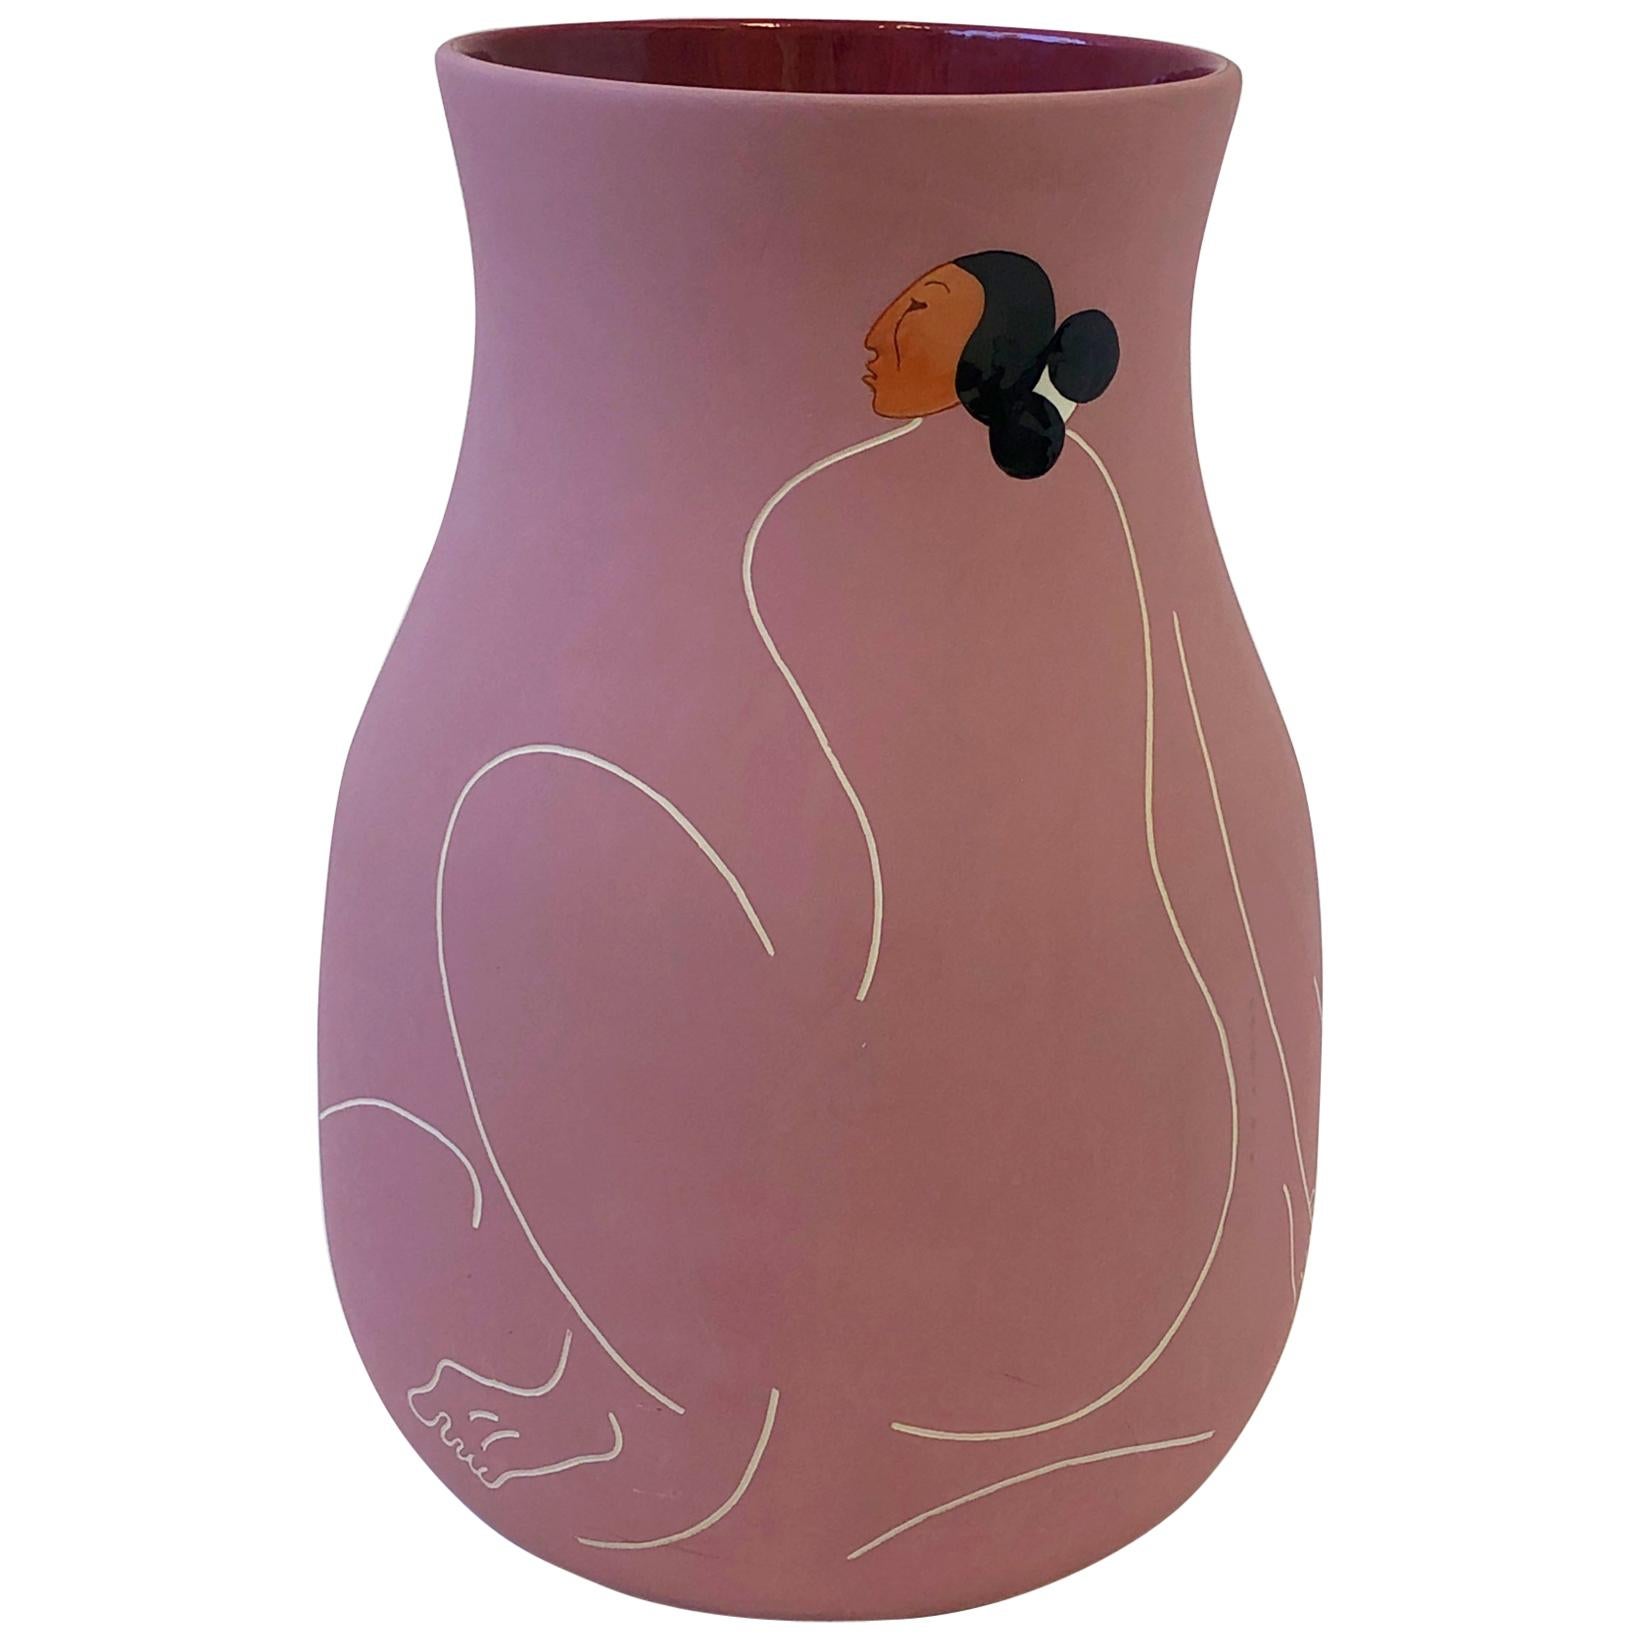 Studio Ceramic Vase by Rudolph Carl Gorman